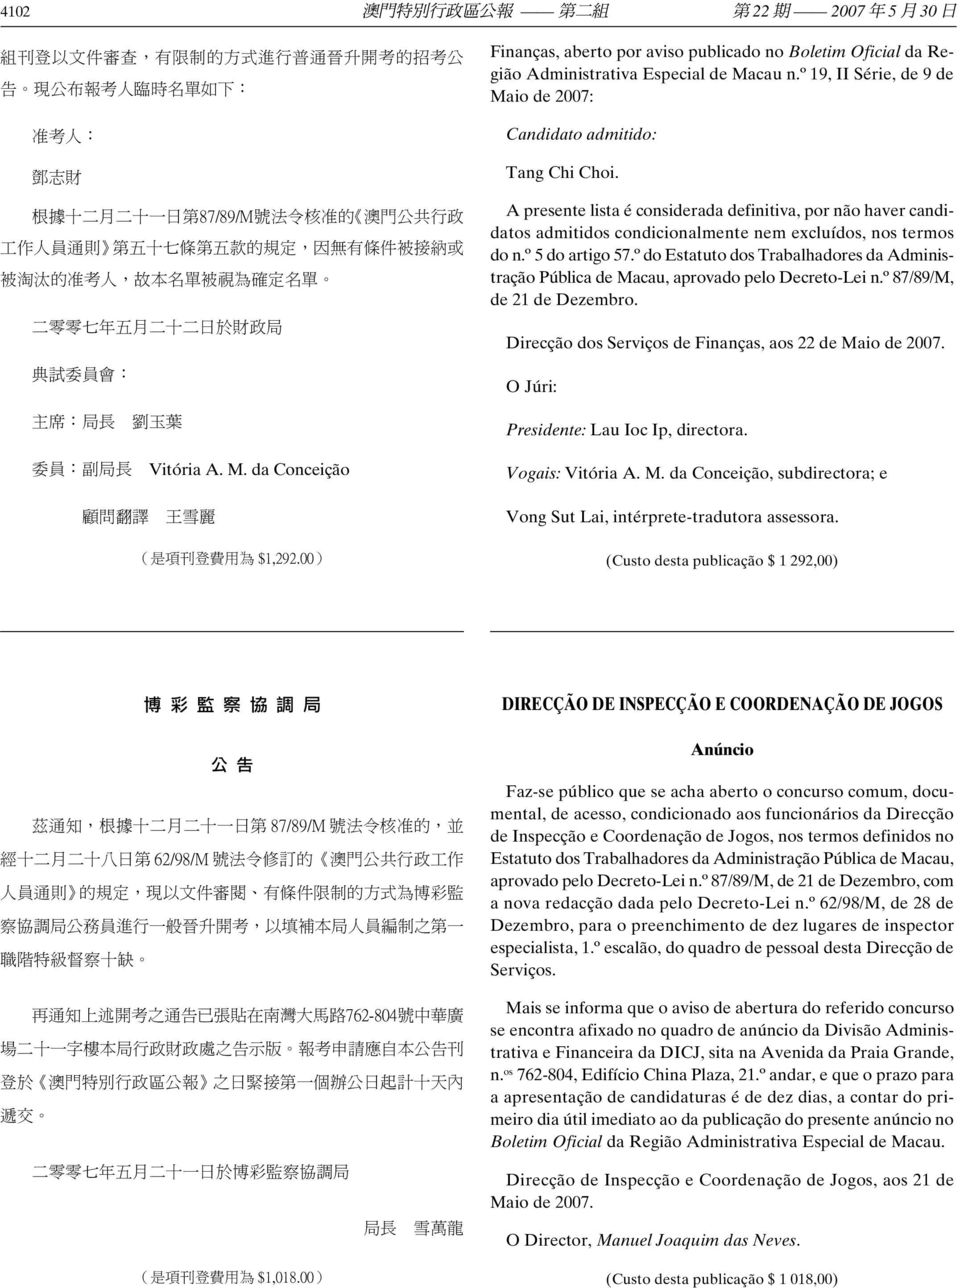 Administrativa Especial de Macau n.º 19, II Série, de 9 de Maio de 2007: Candidato admitido: Tang Chi Choi.